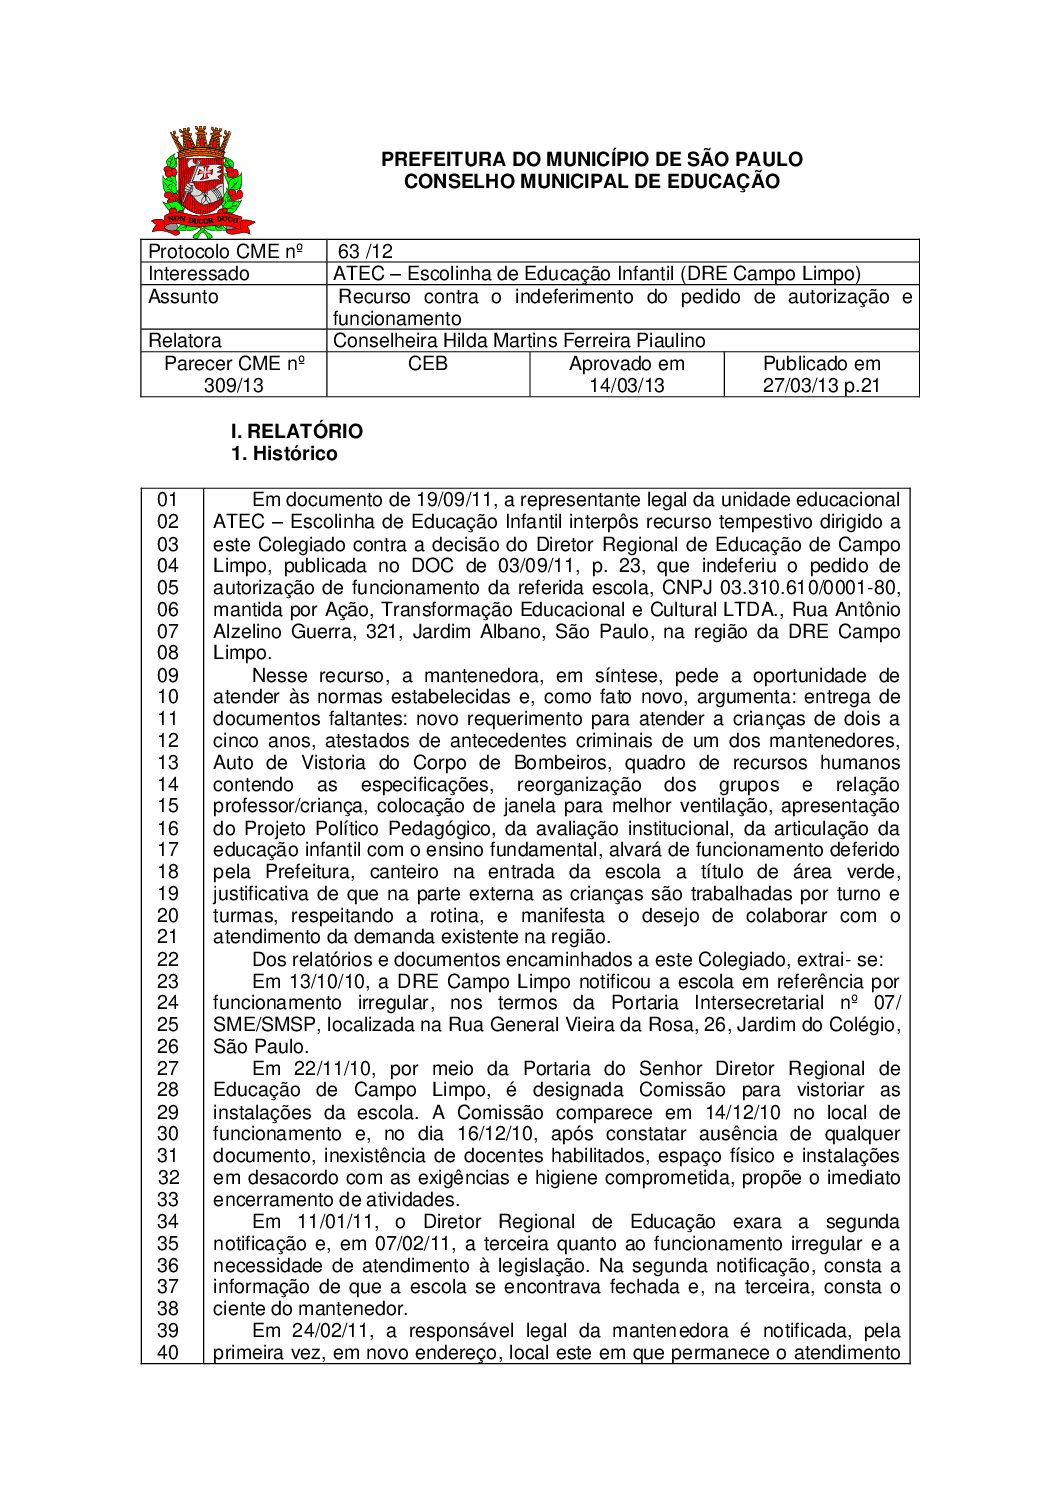 Parecer CME nº 309/2013 -   ATEC – Escolinha de Educação Infantil (DRE Campo Limpo) - Recurso contra o indeferimento do pedido de autorização e funcionamento 